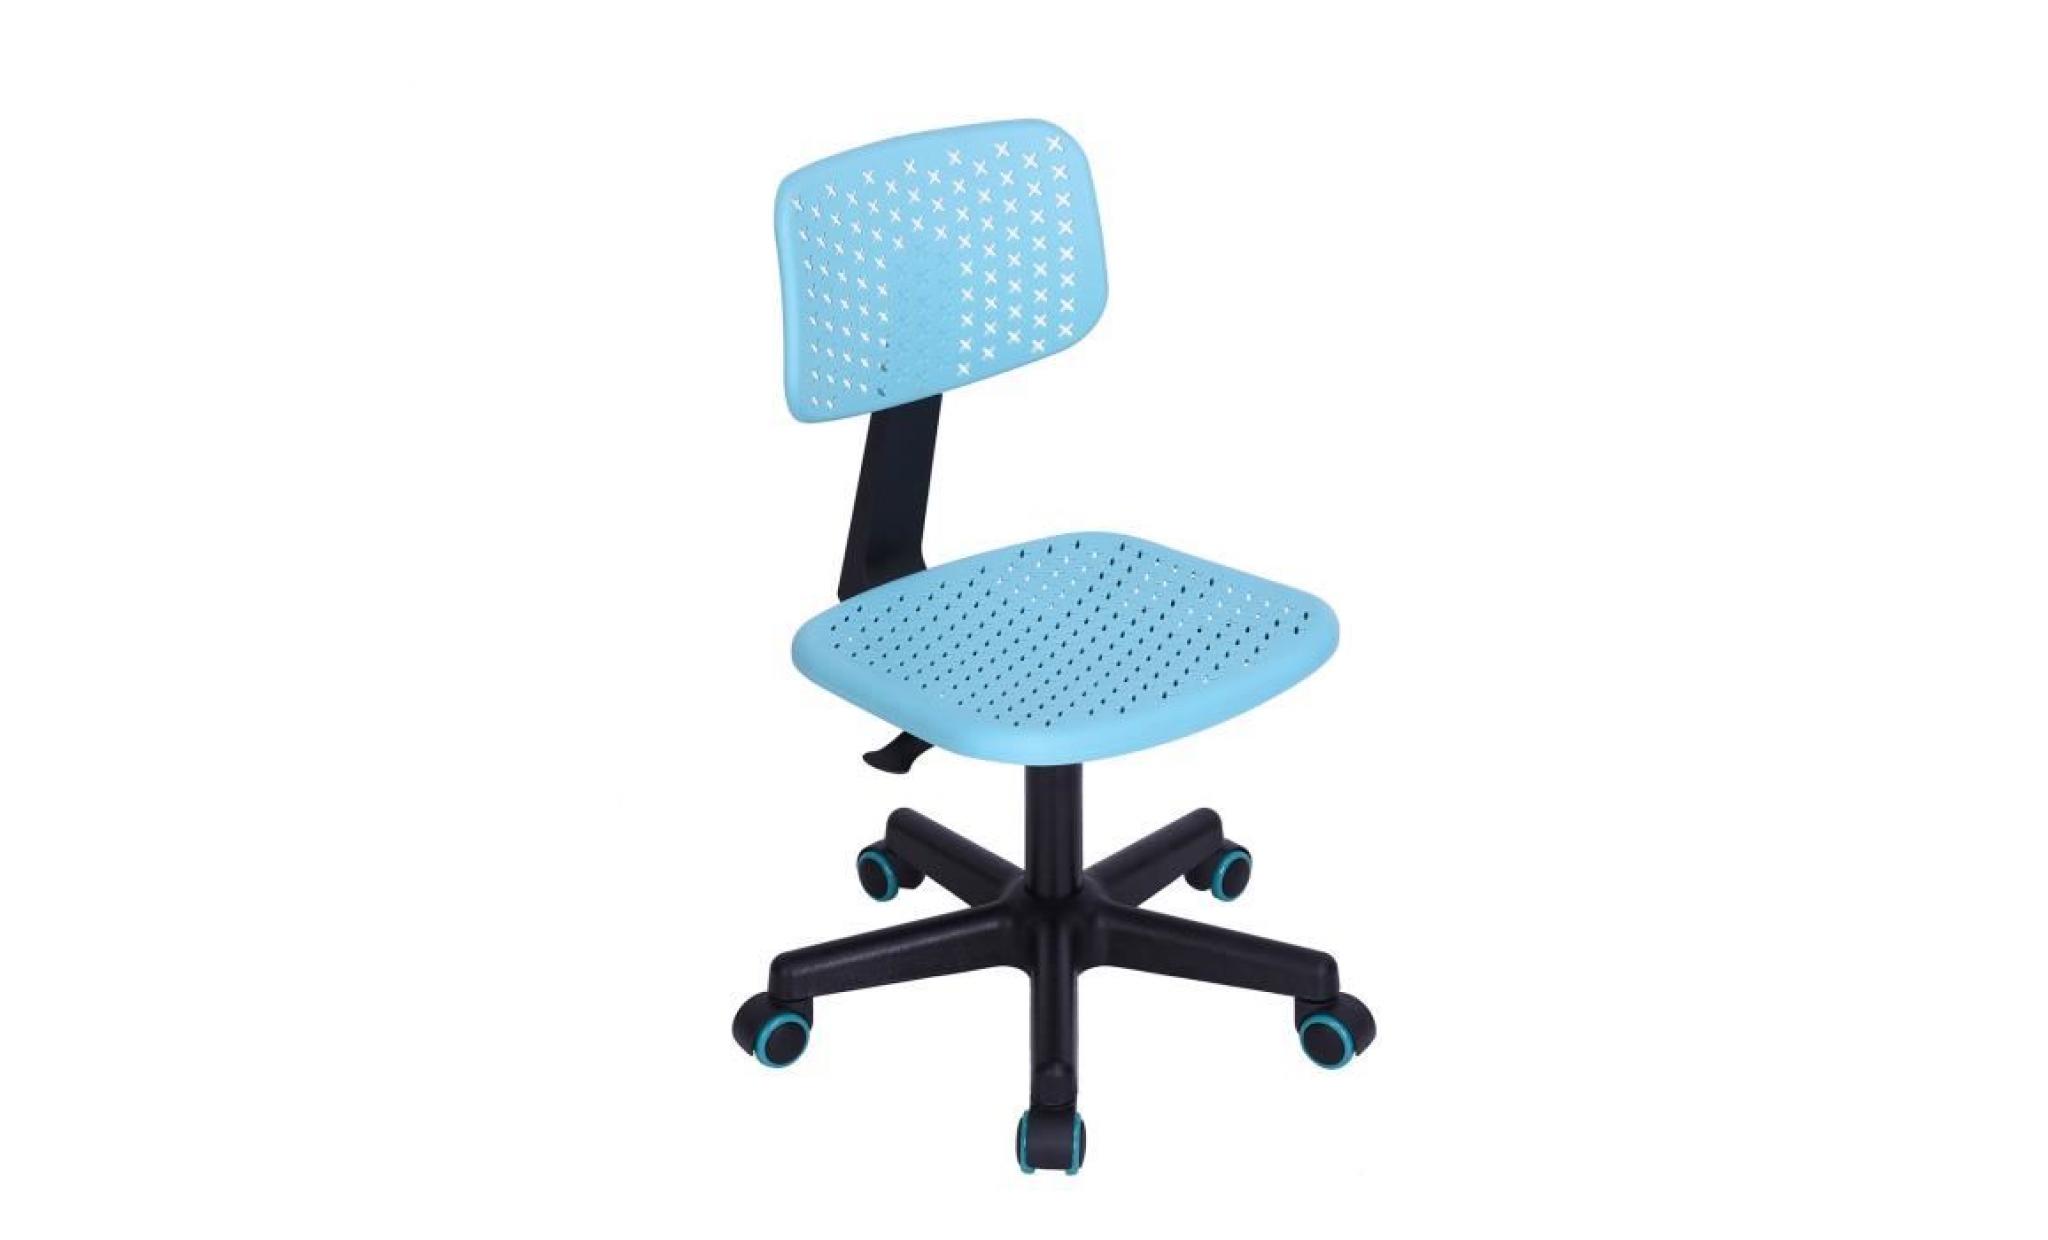 v.l.v chaise de bureau pour enfant plastique turquoise ajustable avec roulettes pas cher